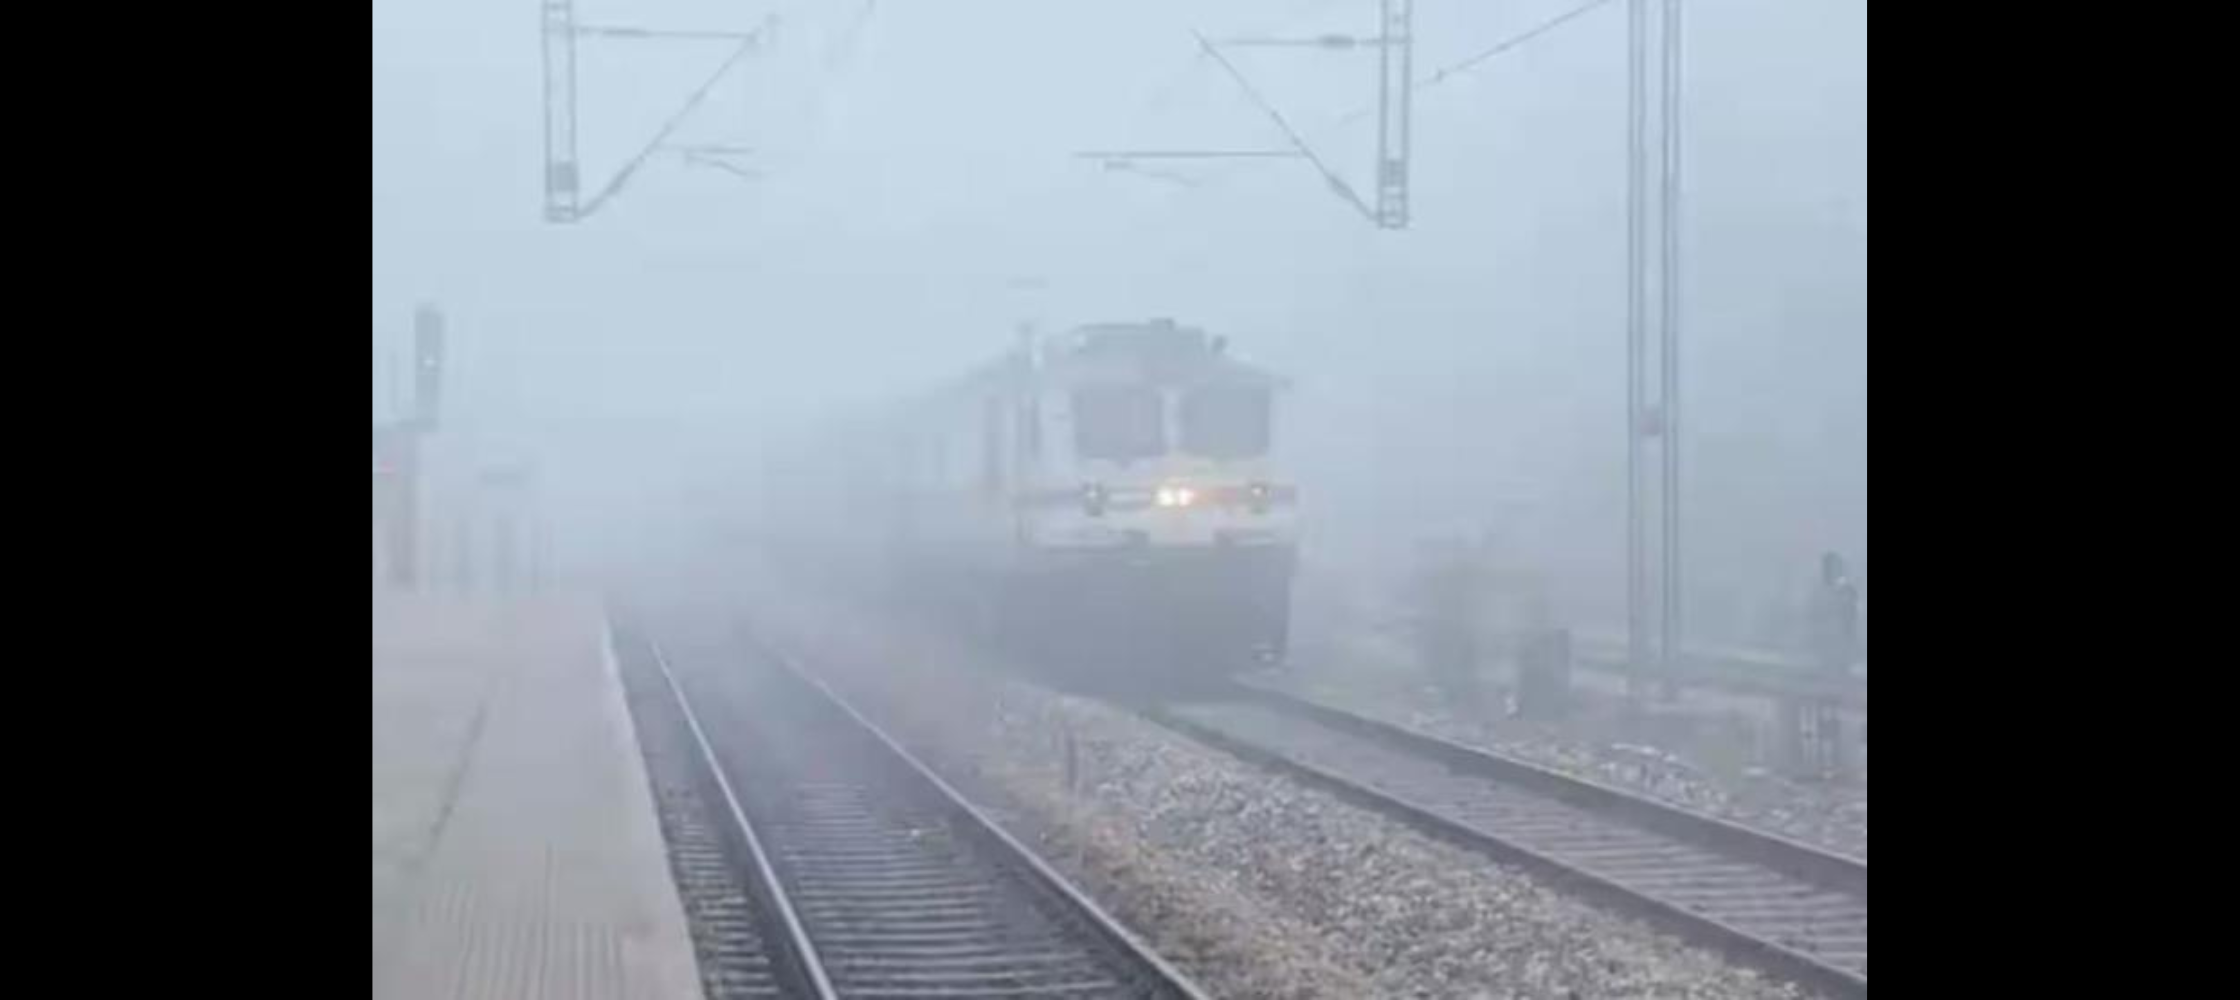 Several trains run late due to dense fog